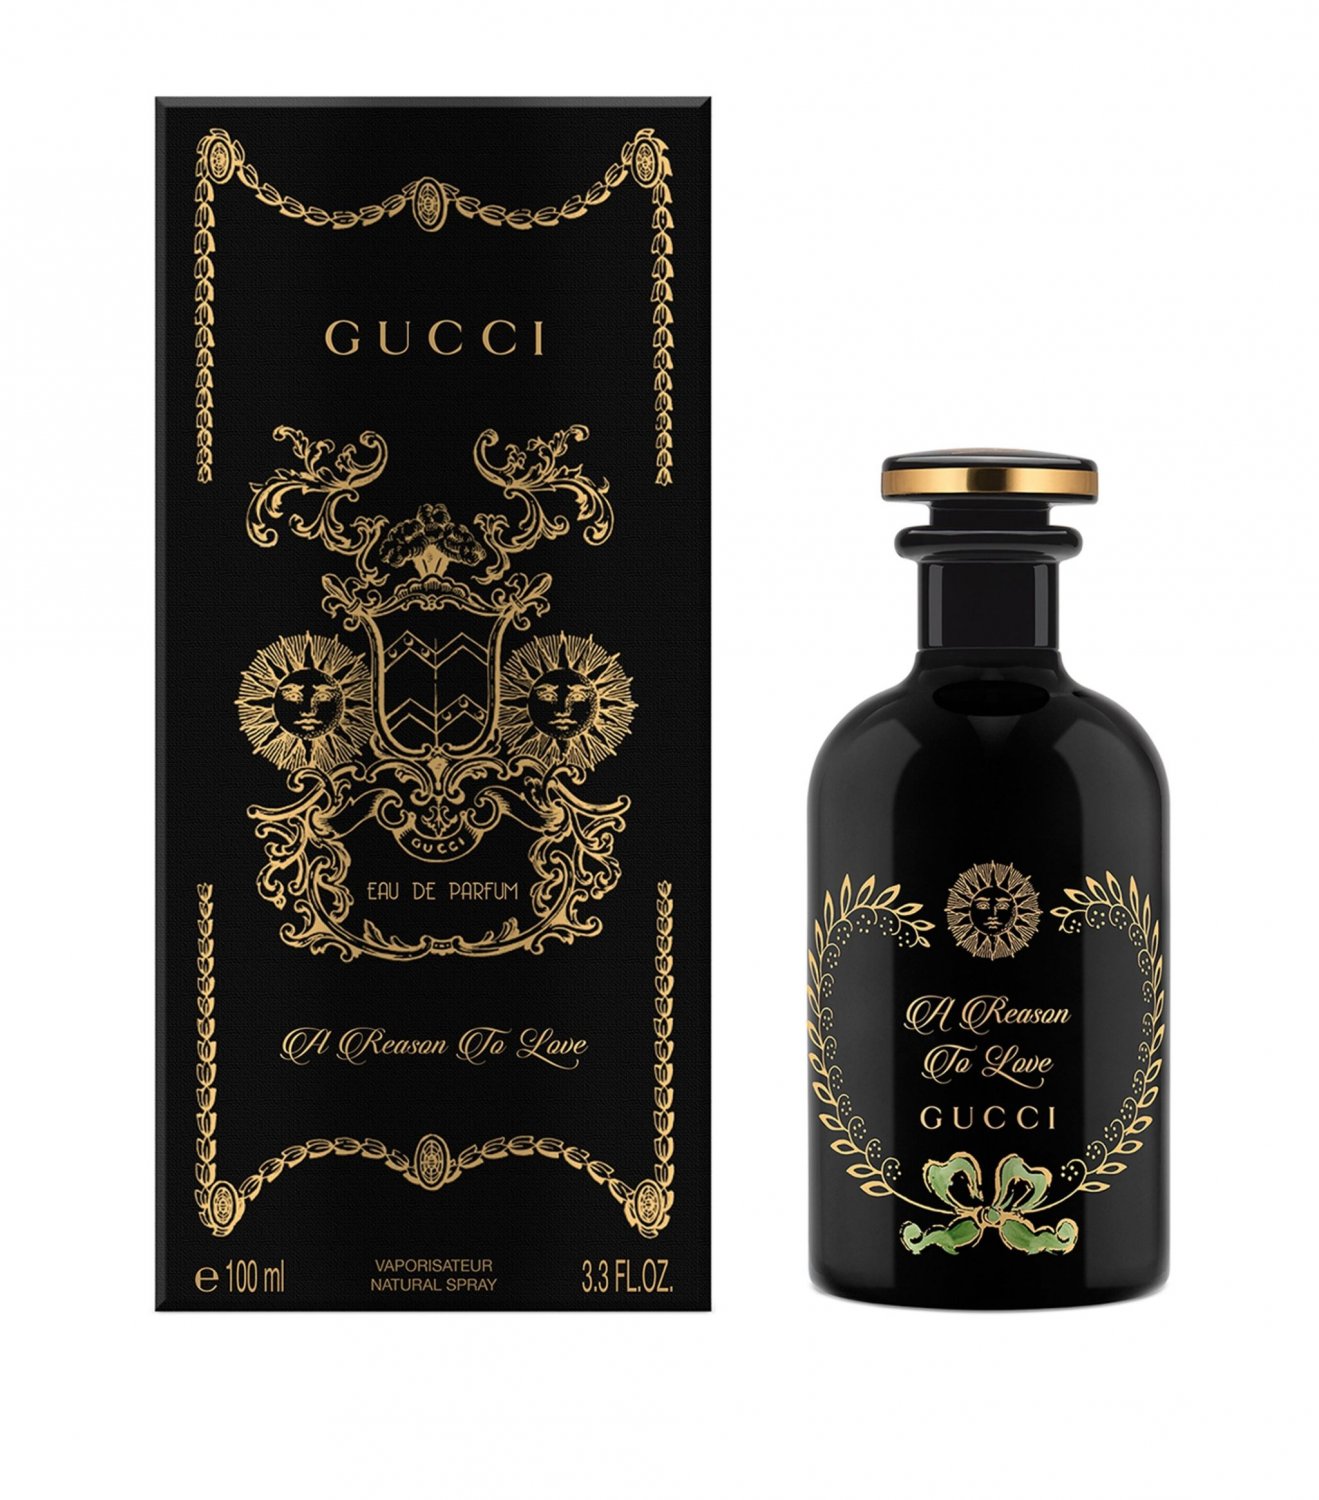 Gucci A Reason To Love Perfume Eau de Parfum 3.3 oz Spray.